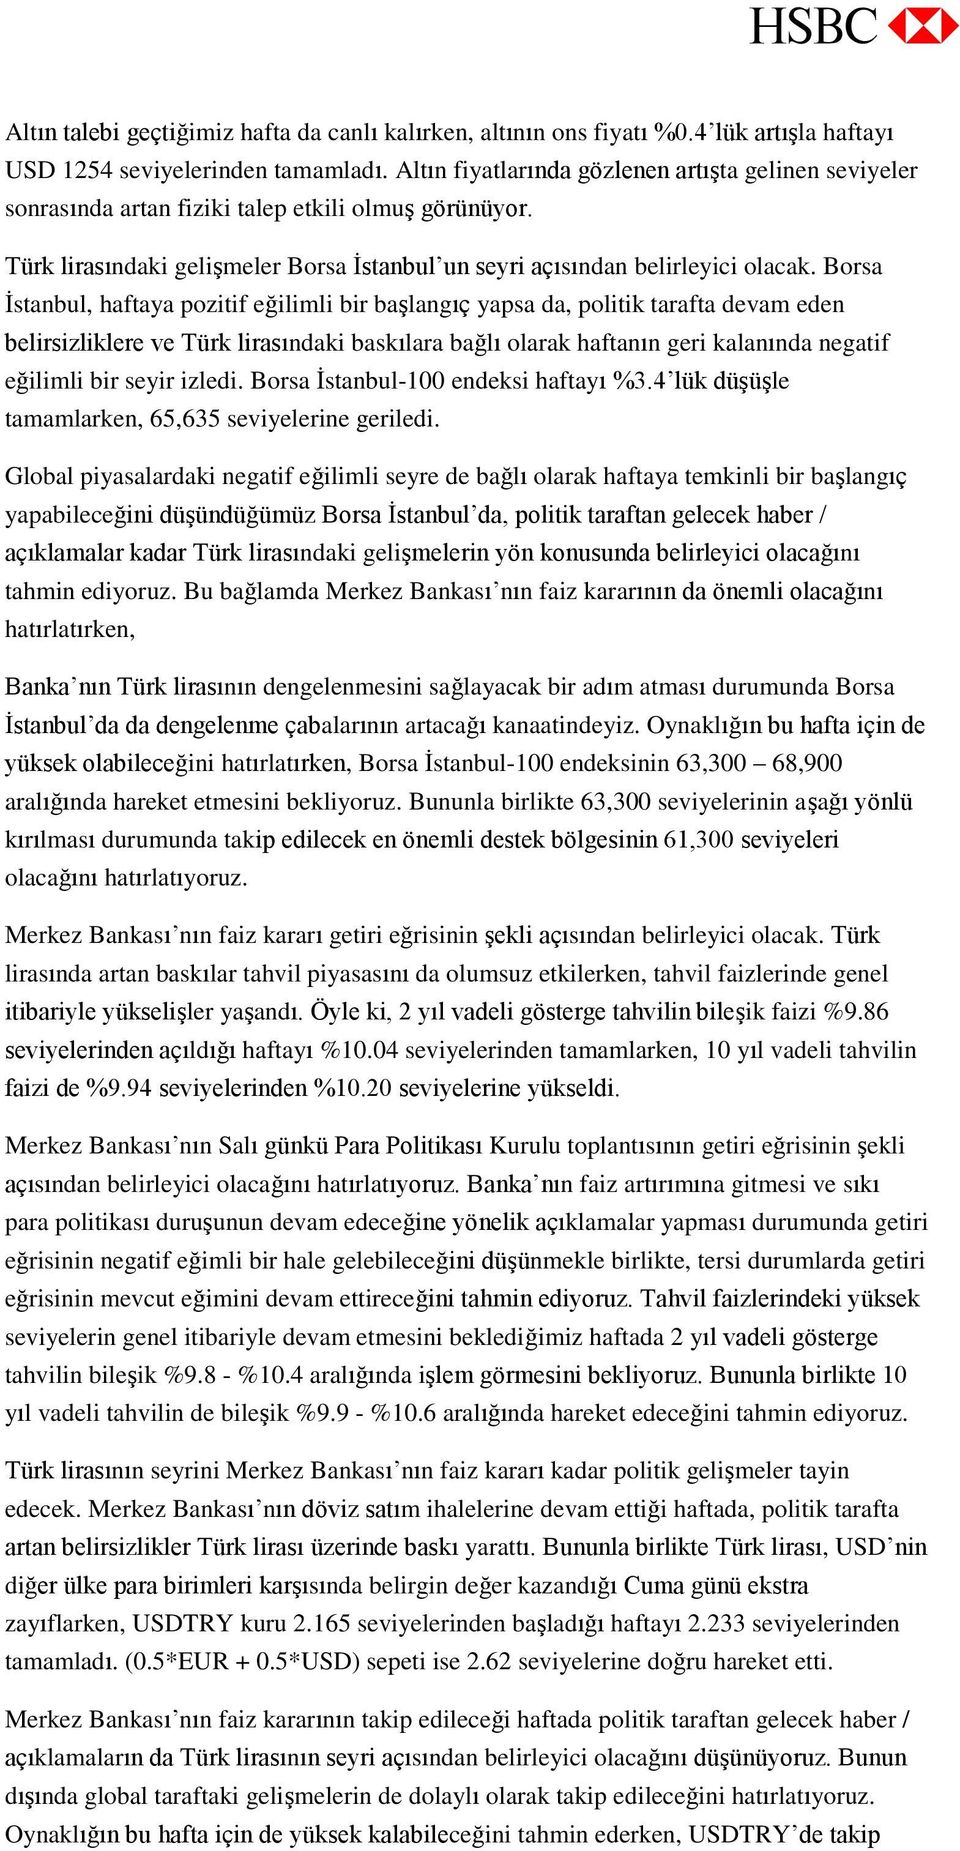 Borsa İstanbul, haftaya pozitif eğilimli bir başlangıç yapsa da, politik tarafta devam eden belirsizliklere ve Türk lirasındaki baskılara bağlı olarak haftanın geri kalanında negatif eğilimli bir